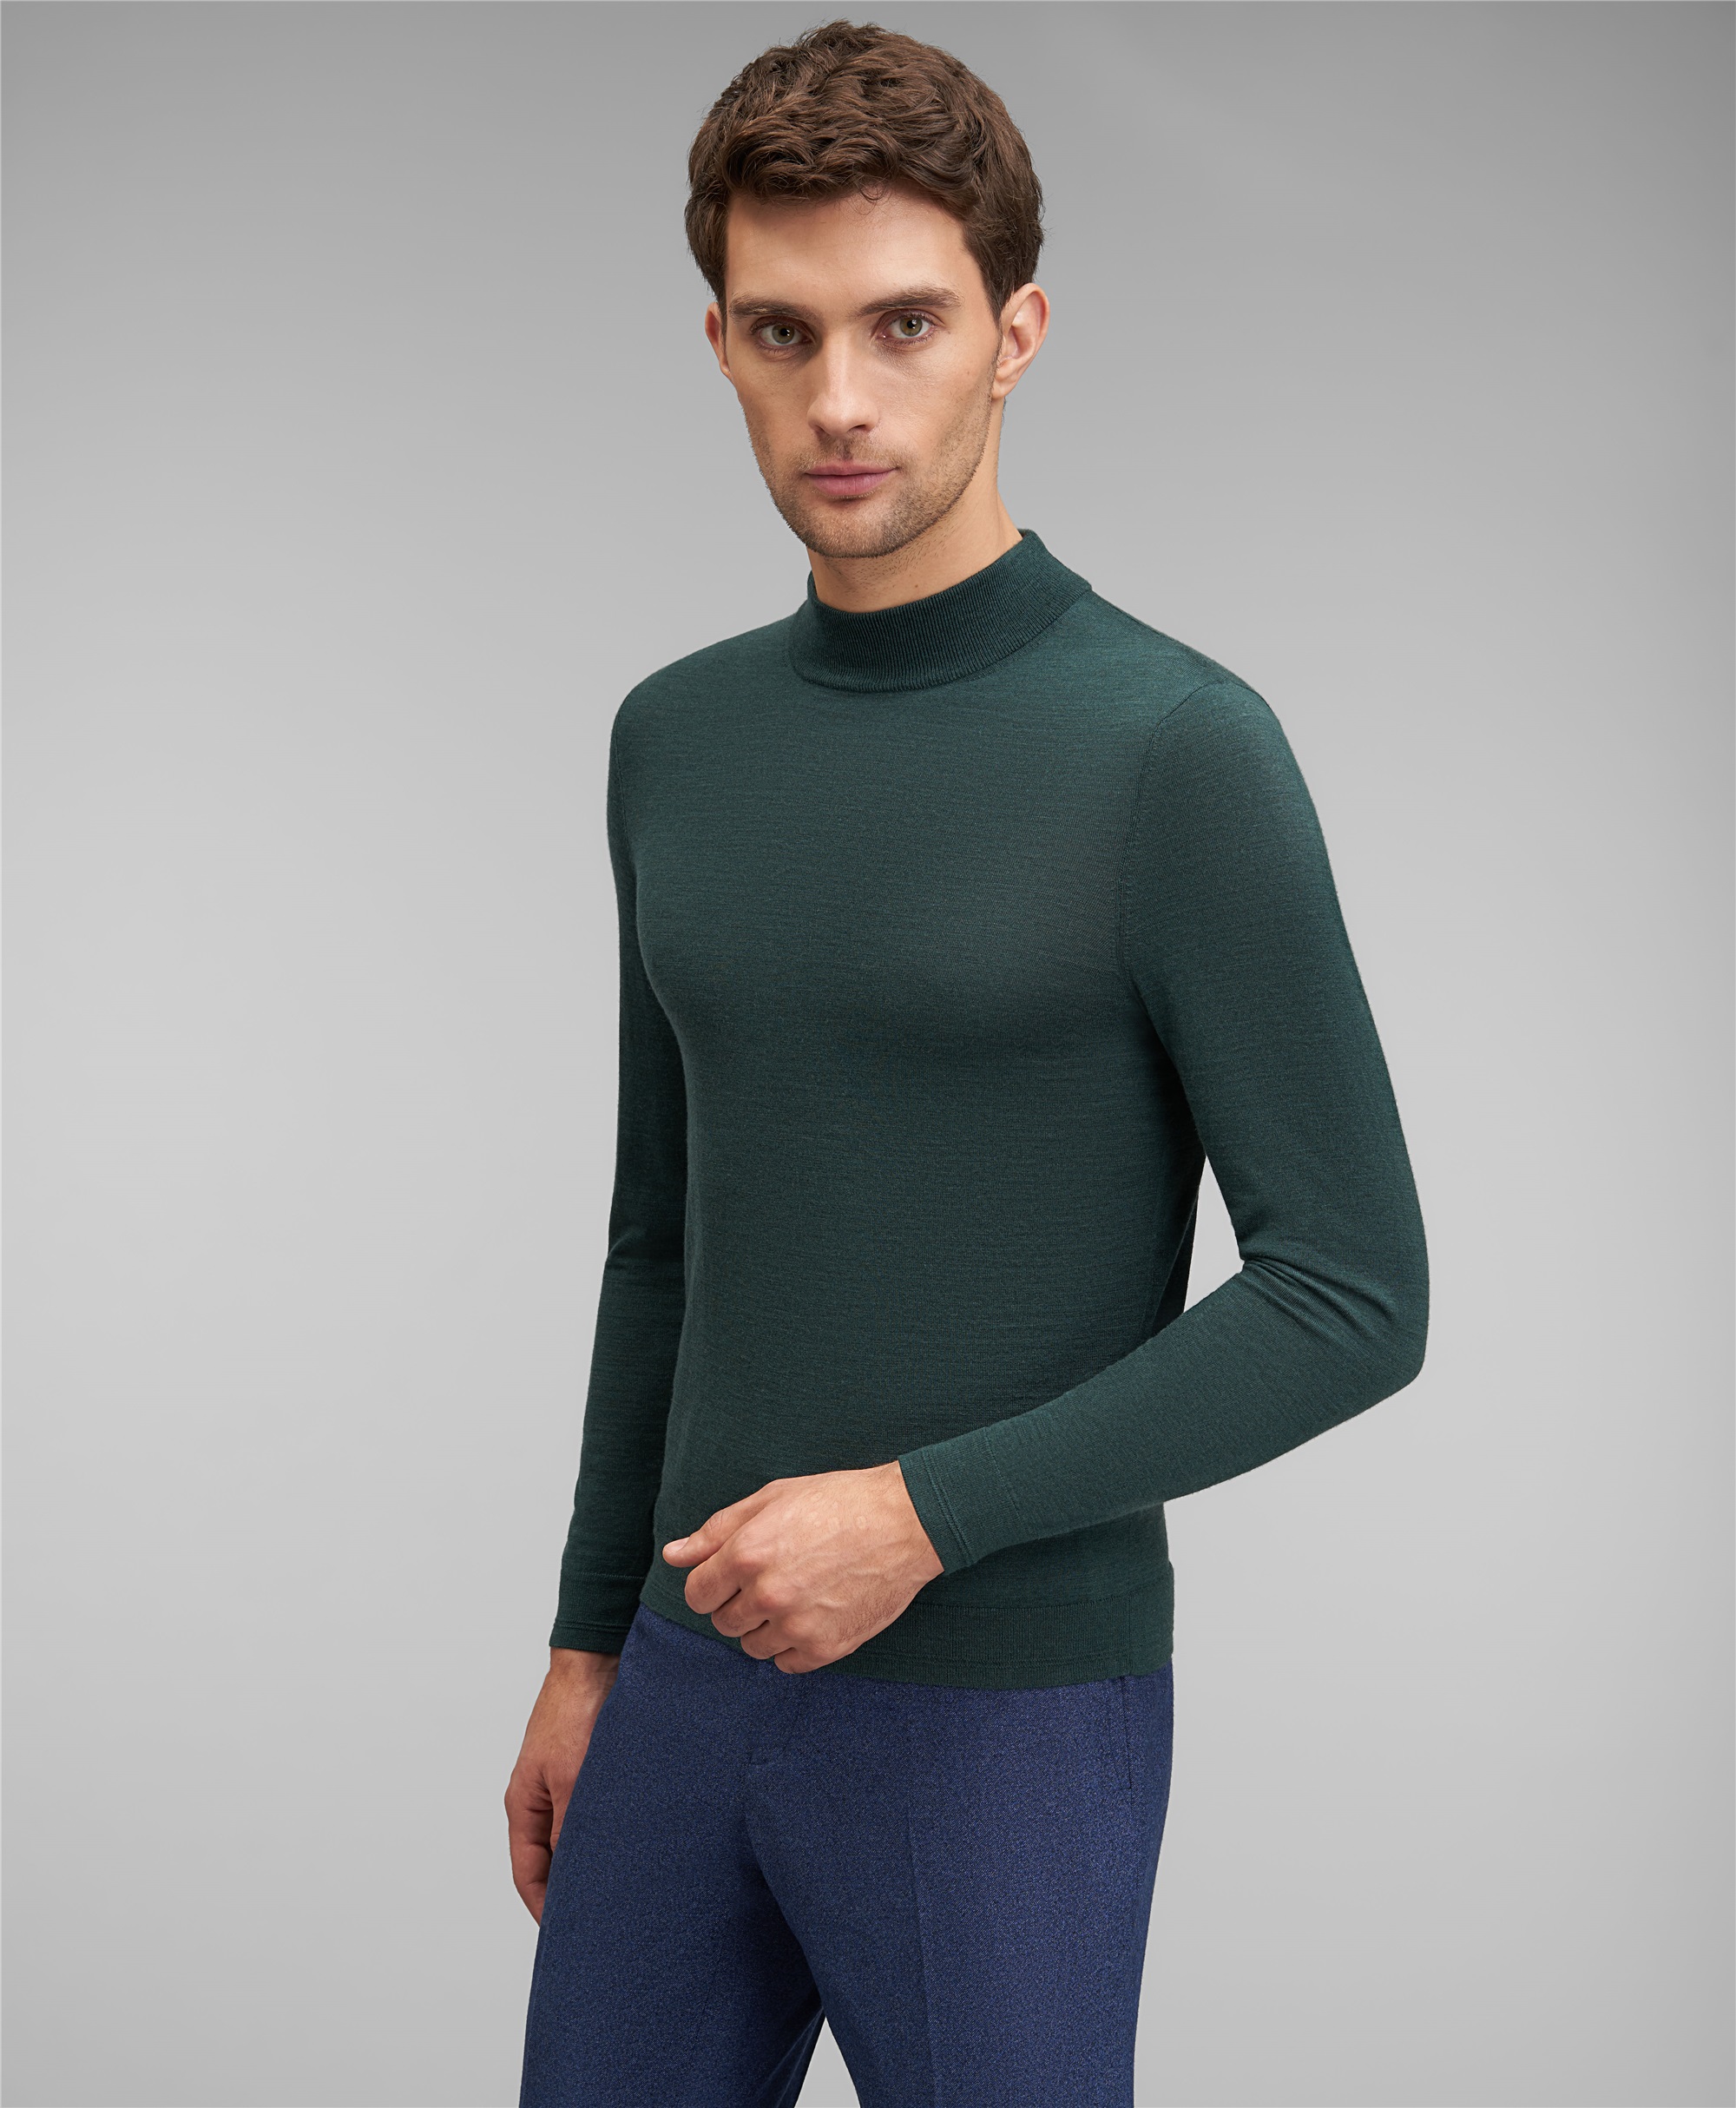 

Пуловер трикотажный HENDERSON, Зеленый, KWL-TN-F2 GREEN